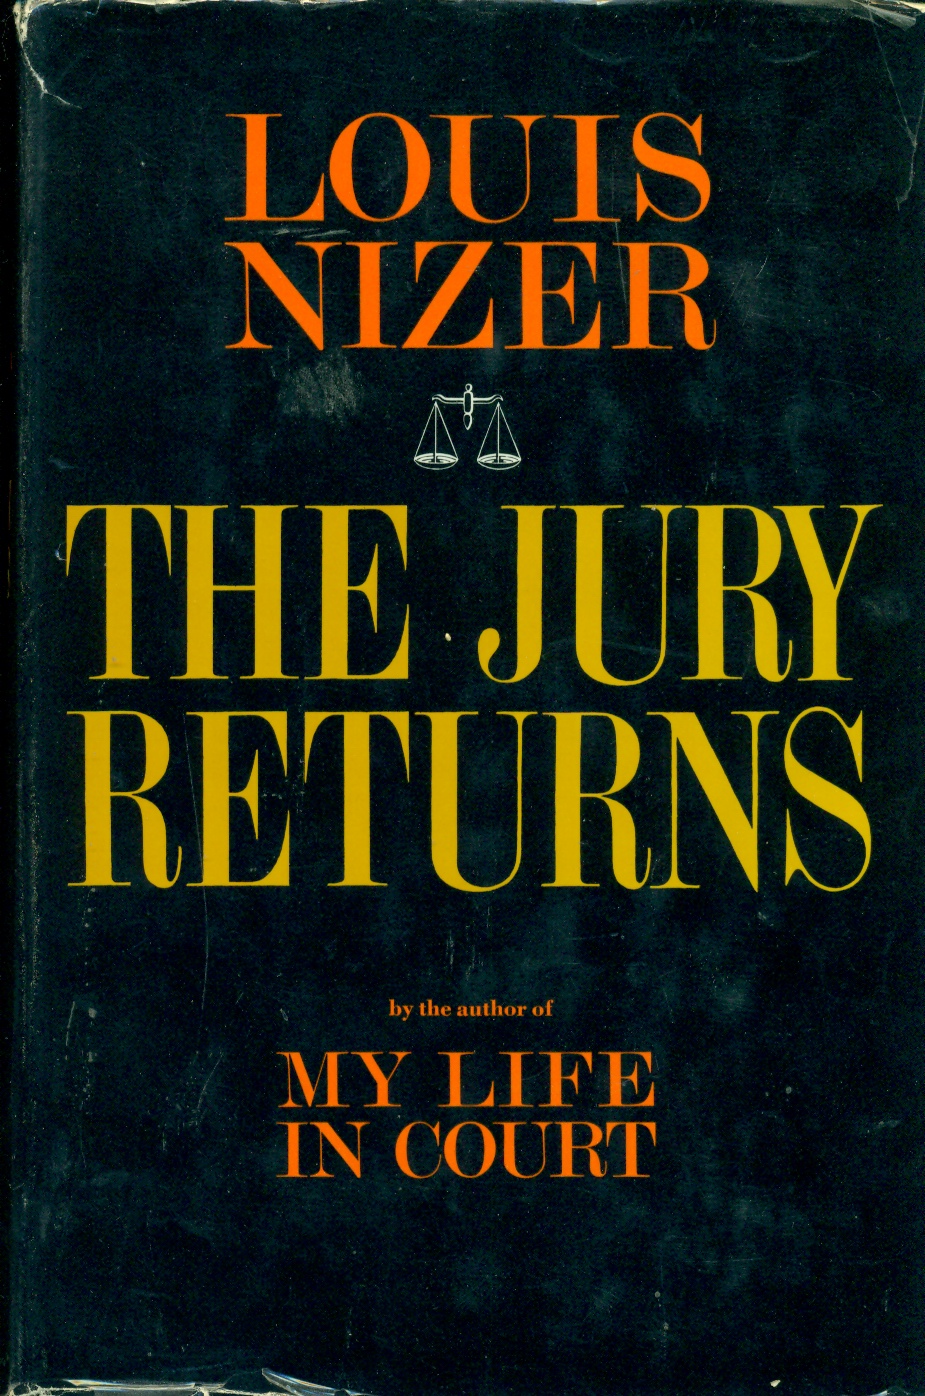 Nizer: My Life in Court